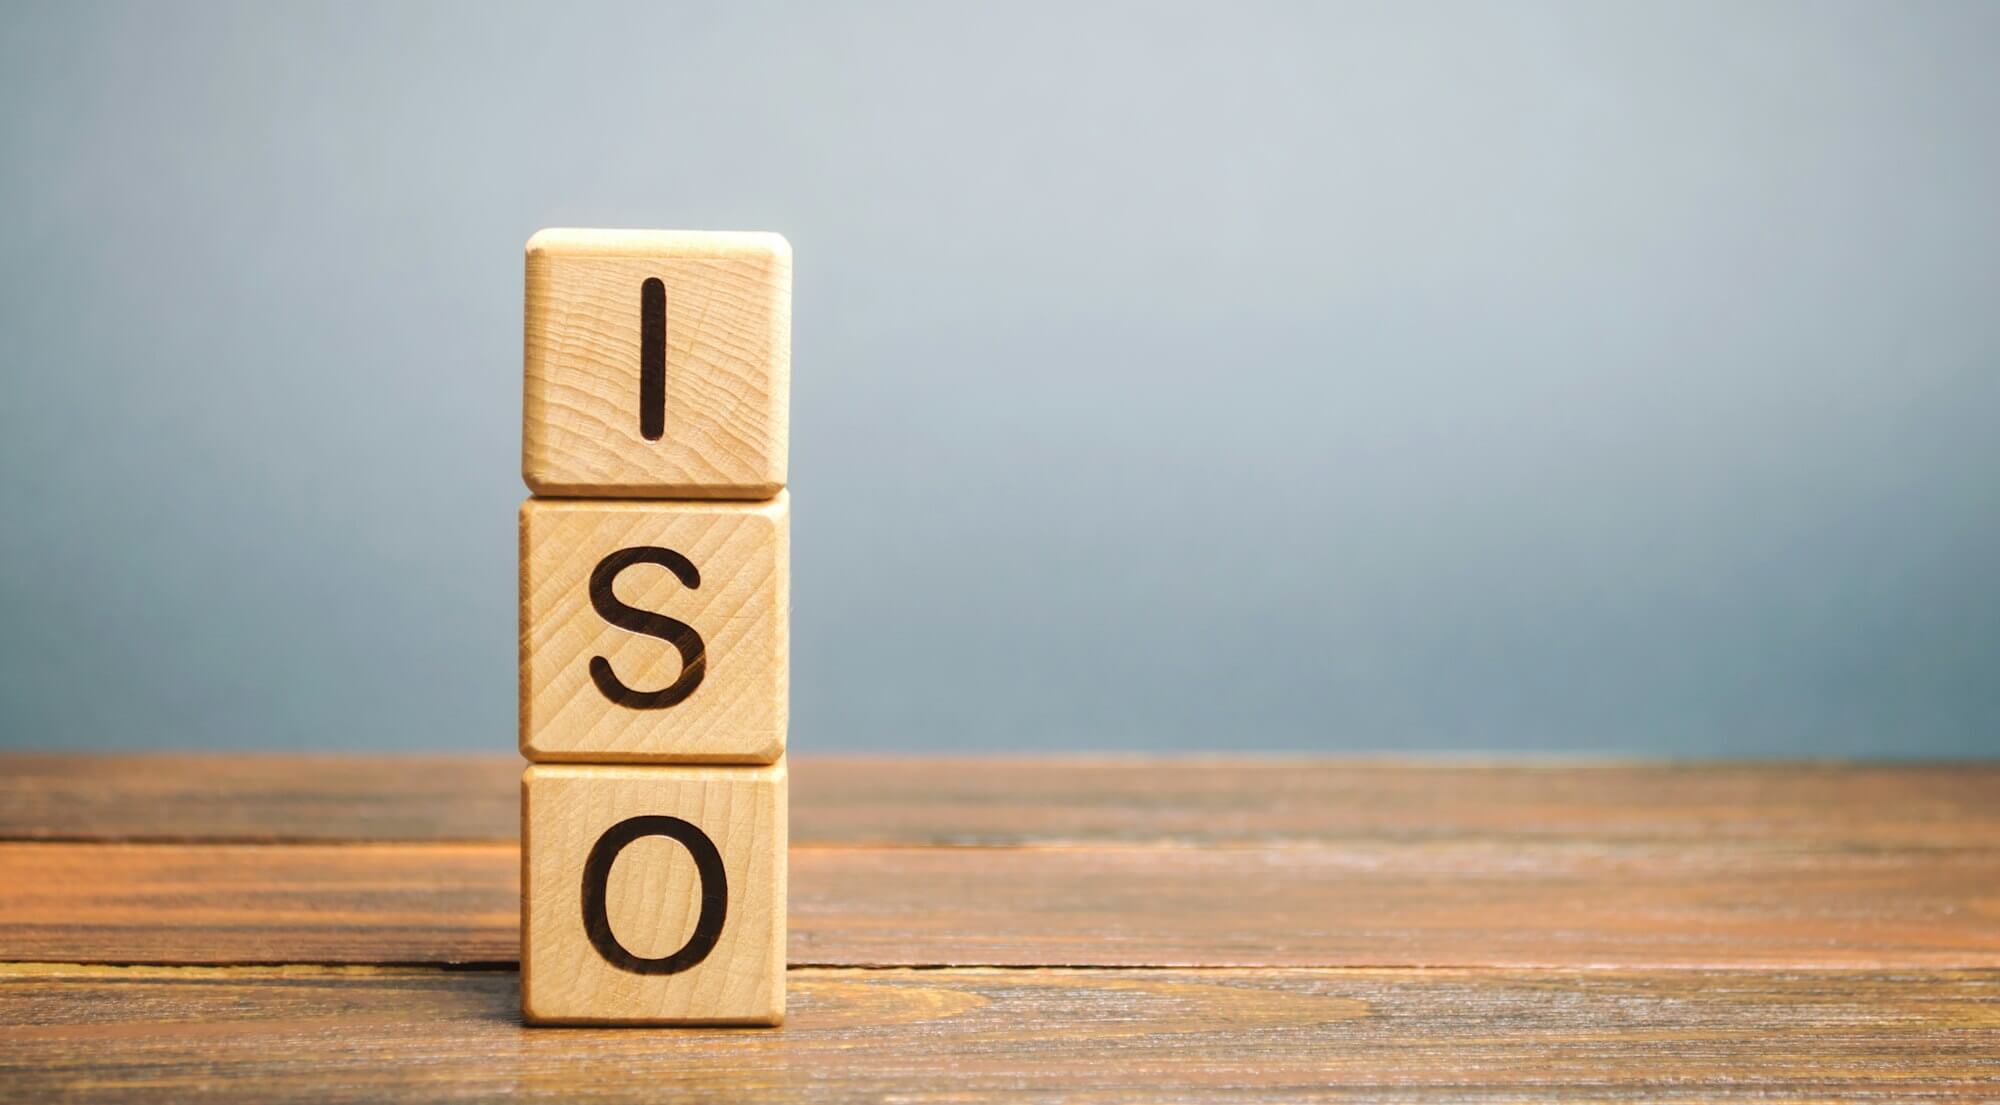 ISO 9001 zertifizierter Betrieb